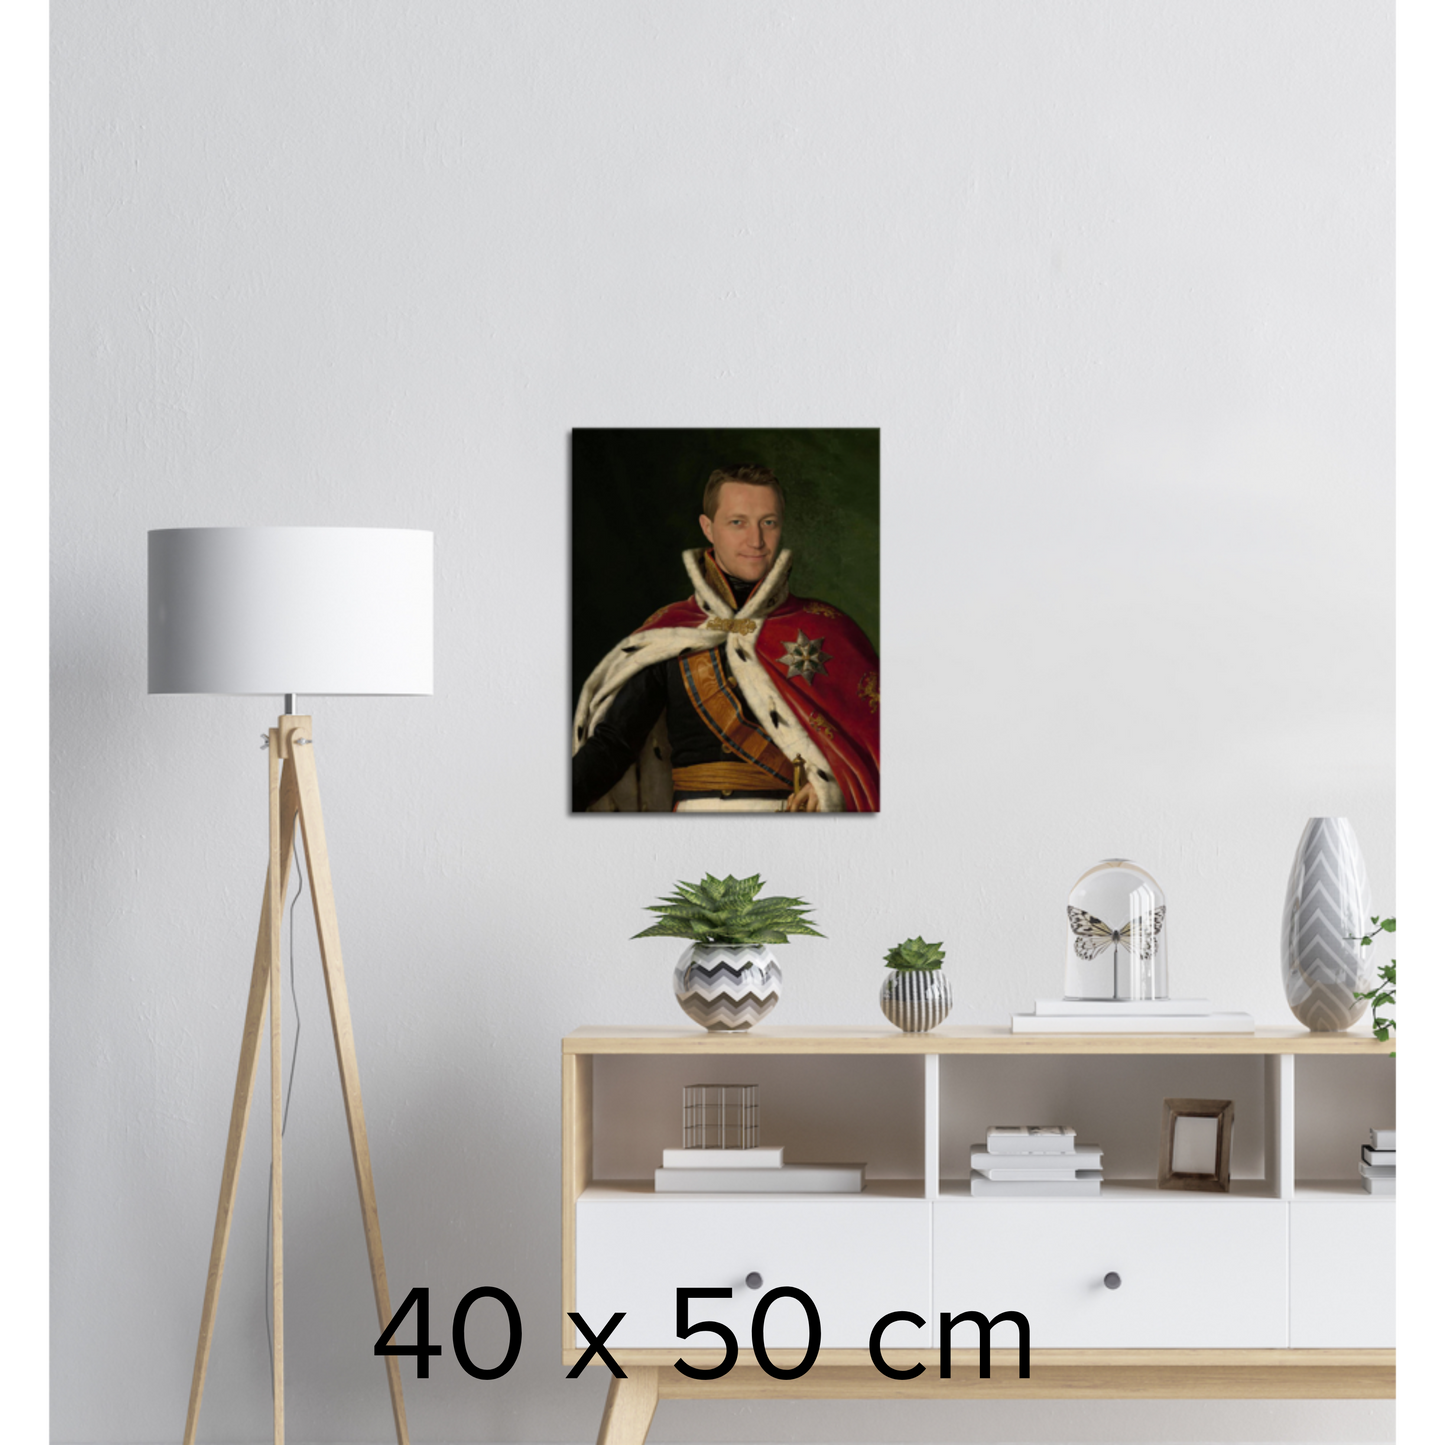 REGENTEN- Skräddarsytt kungligt porträtt - unik presentidé